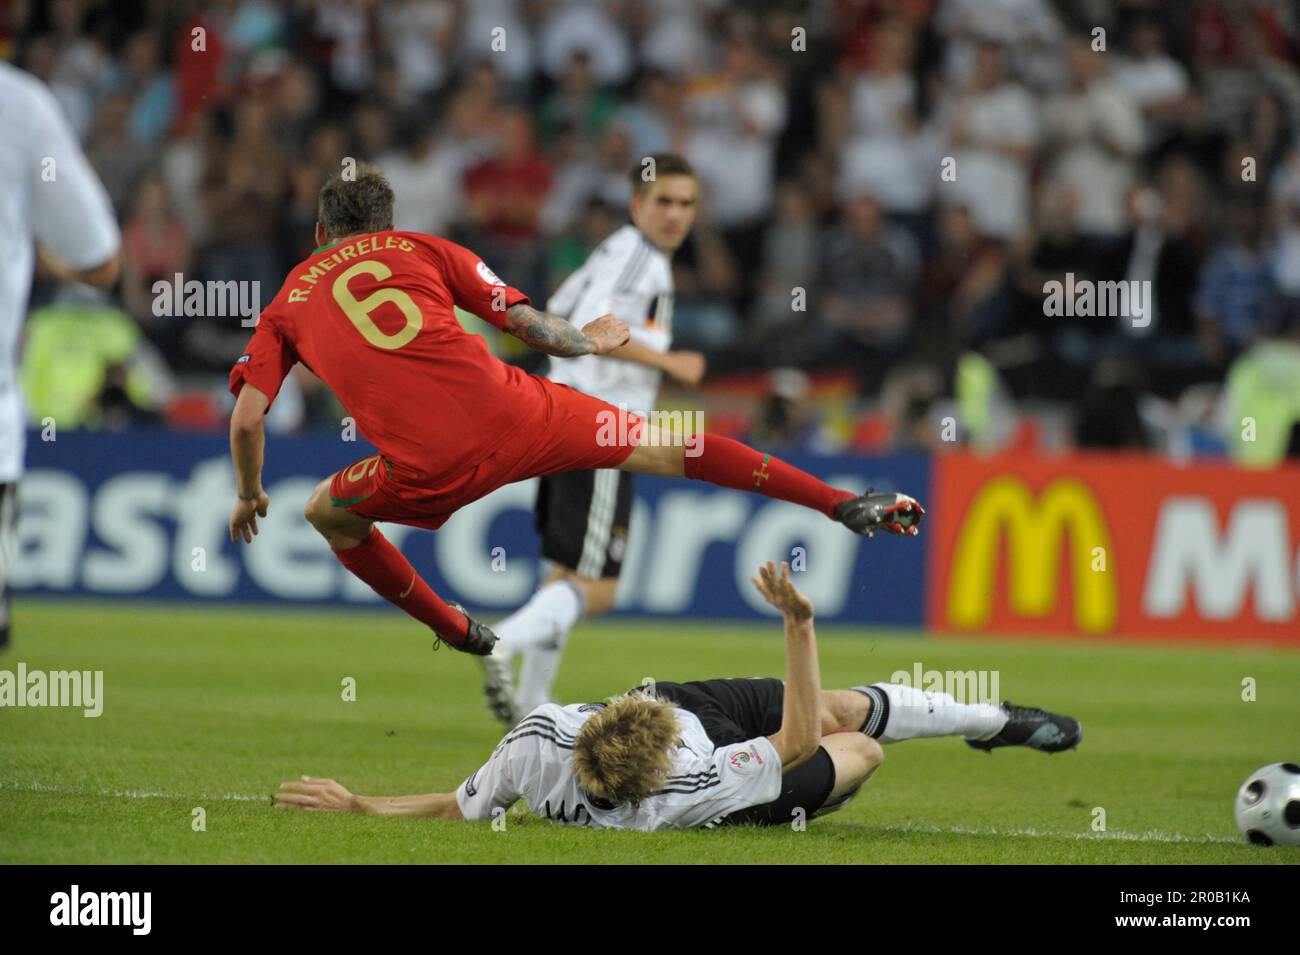 Marcell Jansen stopp Raul Meireles (6) im Zweikampf.Fußball Europameisterschaft Länderspiel Deutschland - Portugal 3:2, 19.6.2008 Stock Photo